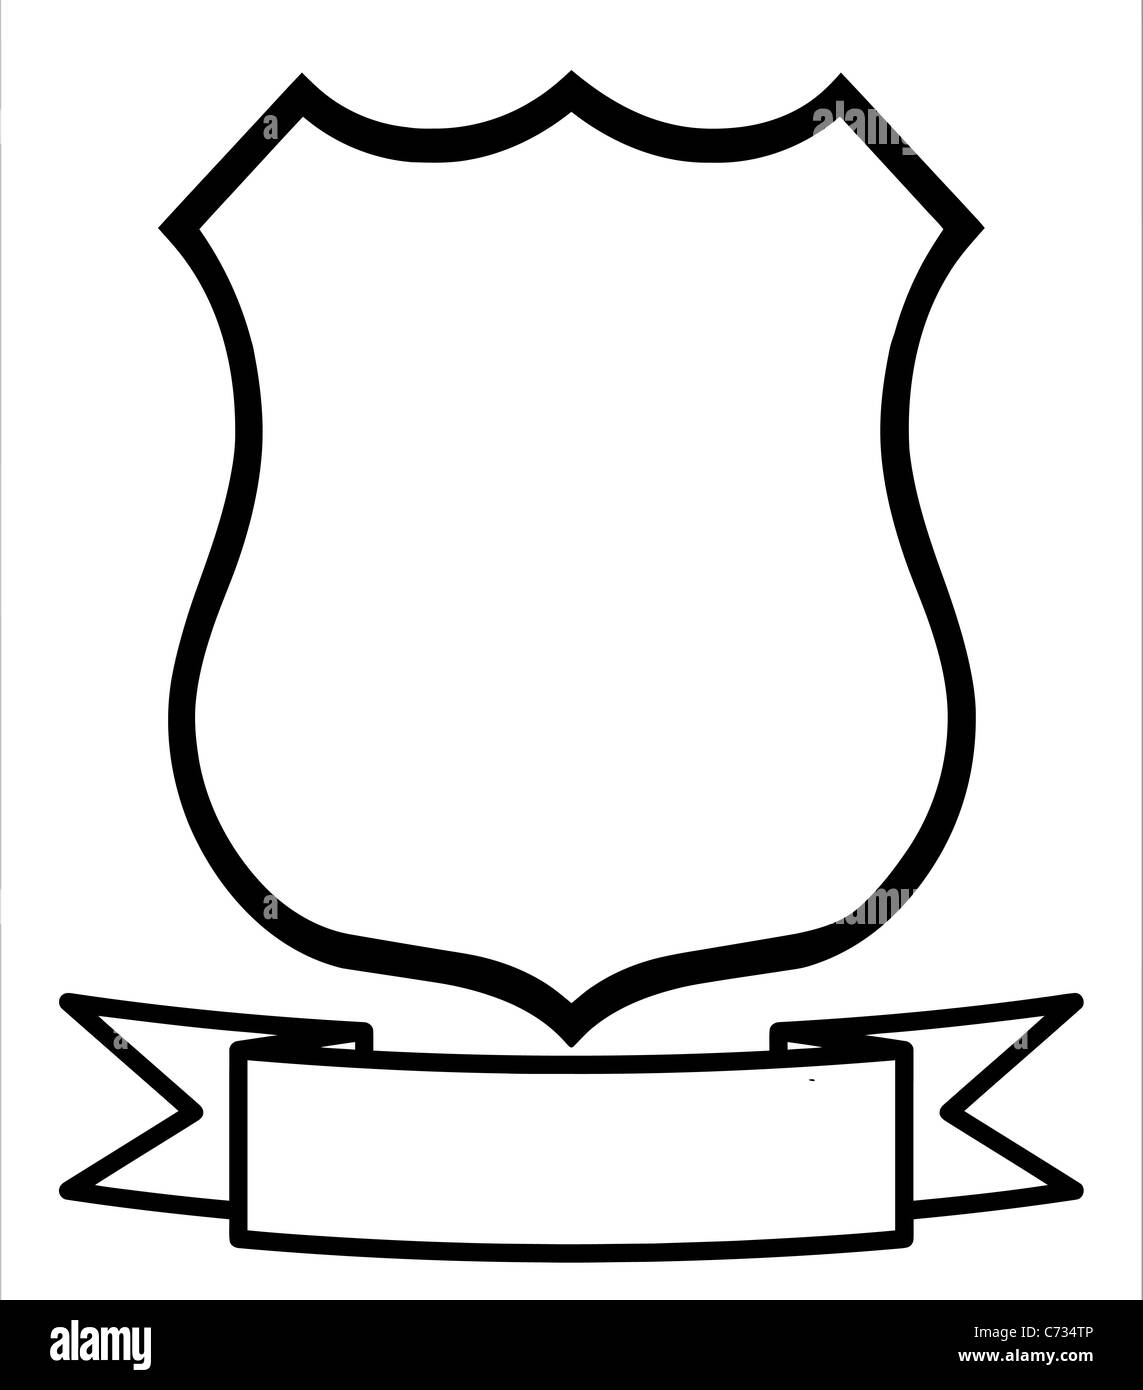 https://c8.alamy.com/compde/c734tp/leer-leer-emblem-abzeichen-shield-logo-insignien-wappen-c734tp.jpg